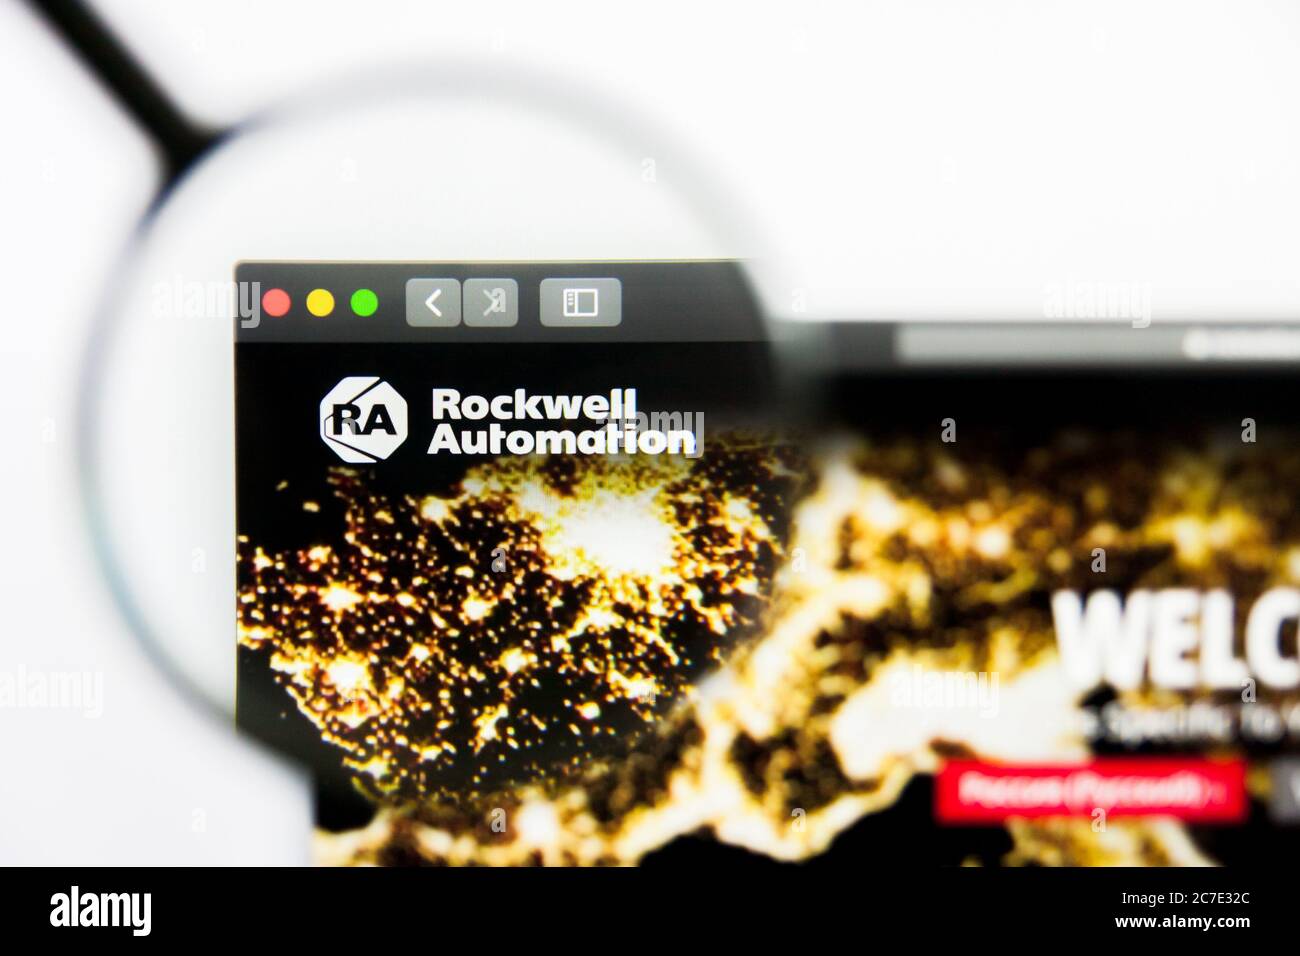 Los Angeles, Californie, Etats-Unis - 25 mars 2019 : éditorial illustratif de la page d'accueil du site Rockwell Automation. Logo Rockwell Automation visible sur Banque D'Images